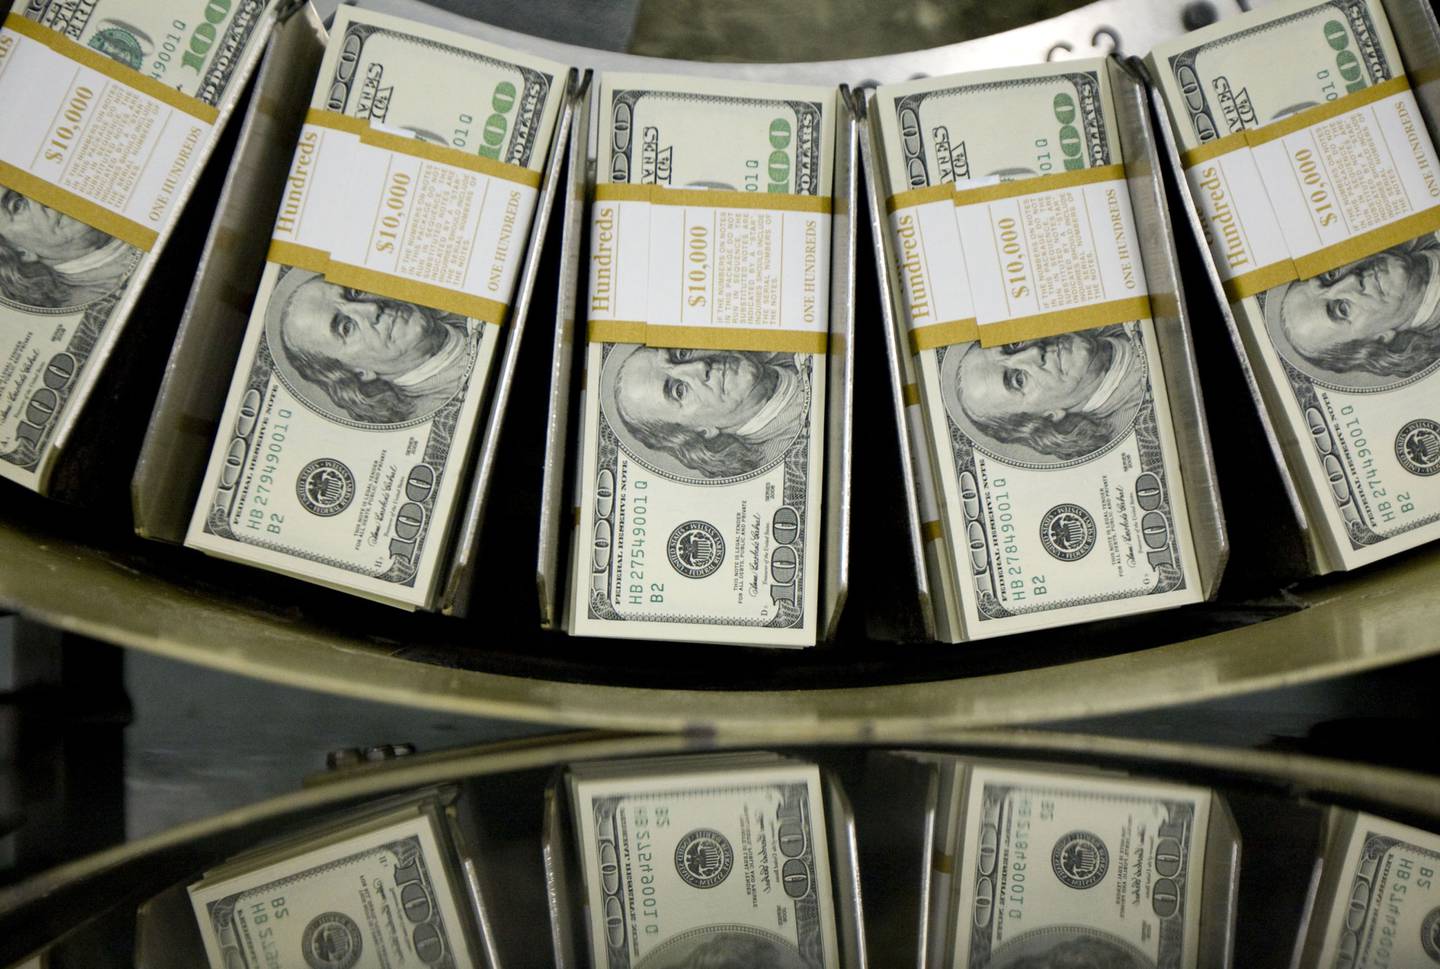 Fajos de billetes de cien dólares pasan por una máquina circuladora en la Oficina de Grabado e Impresión en Washington, D.C., EE. UU., el miércoles 14 de octubre de 2009. Foto: Bloomberg